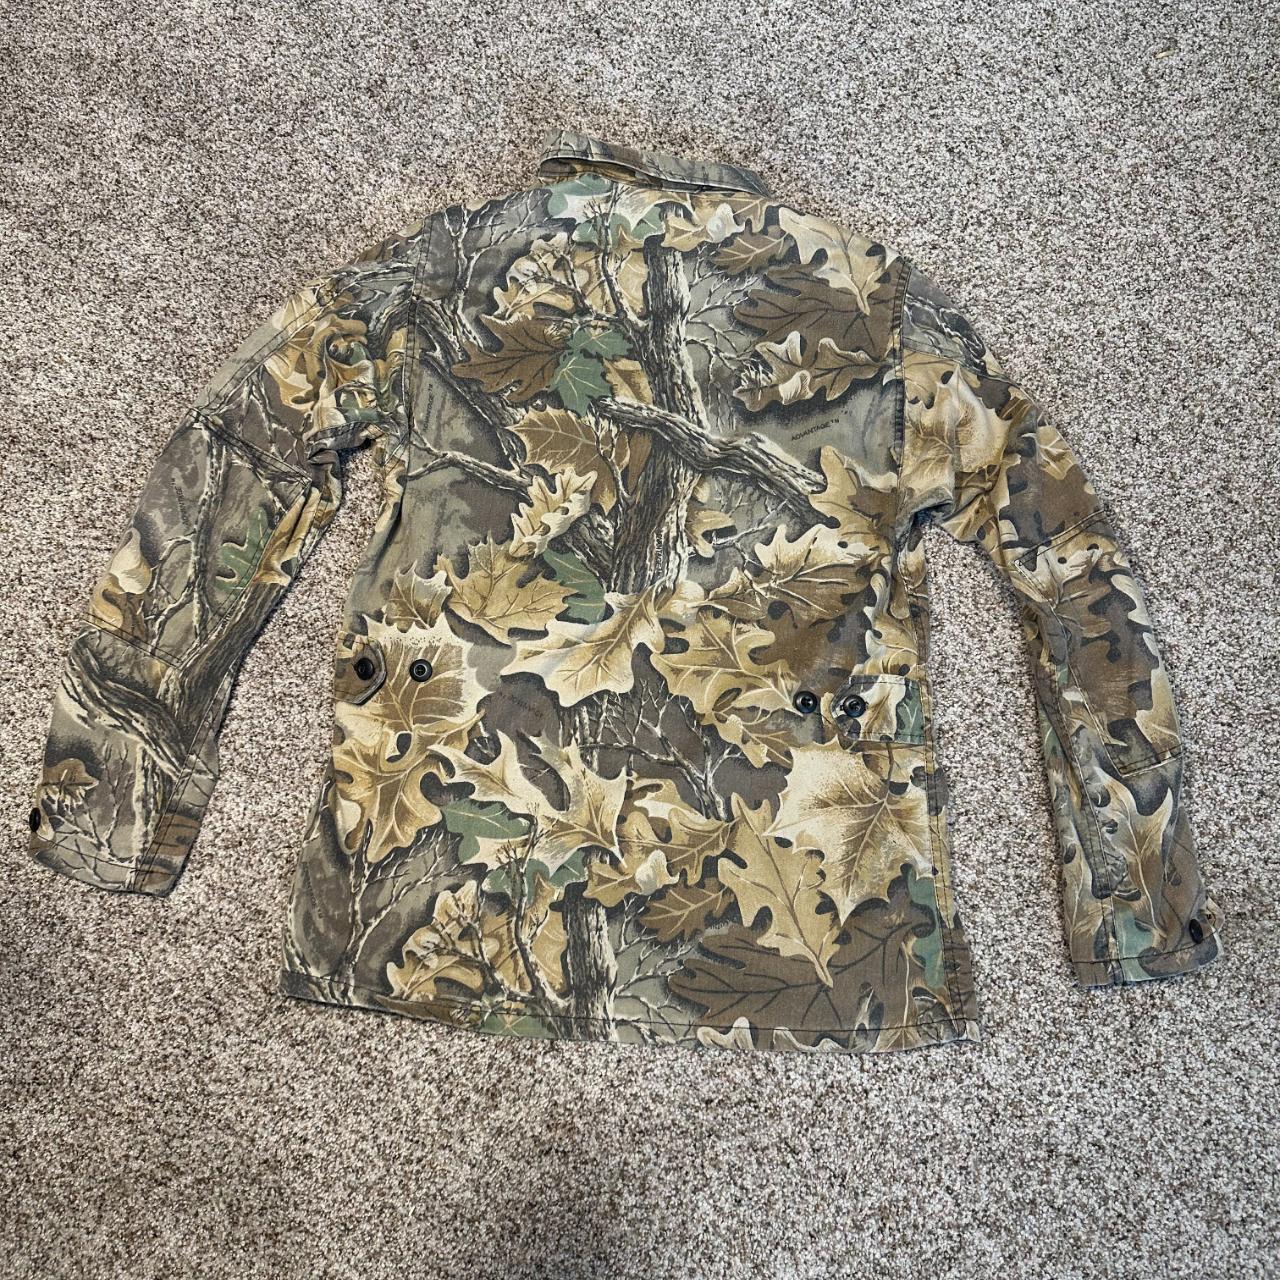 camo jacket vintage size medium see measurements for... - Depop